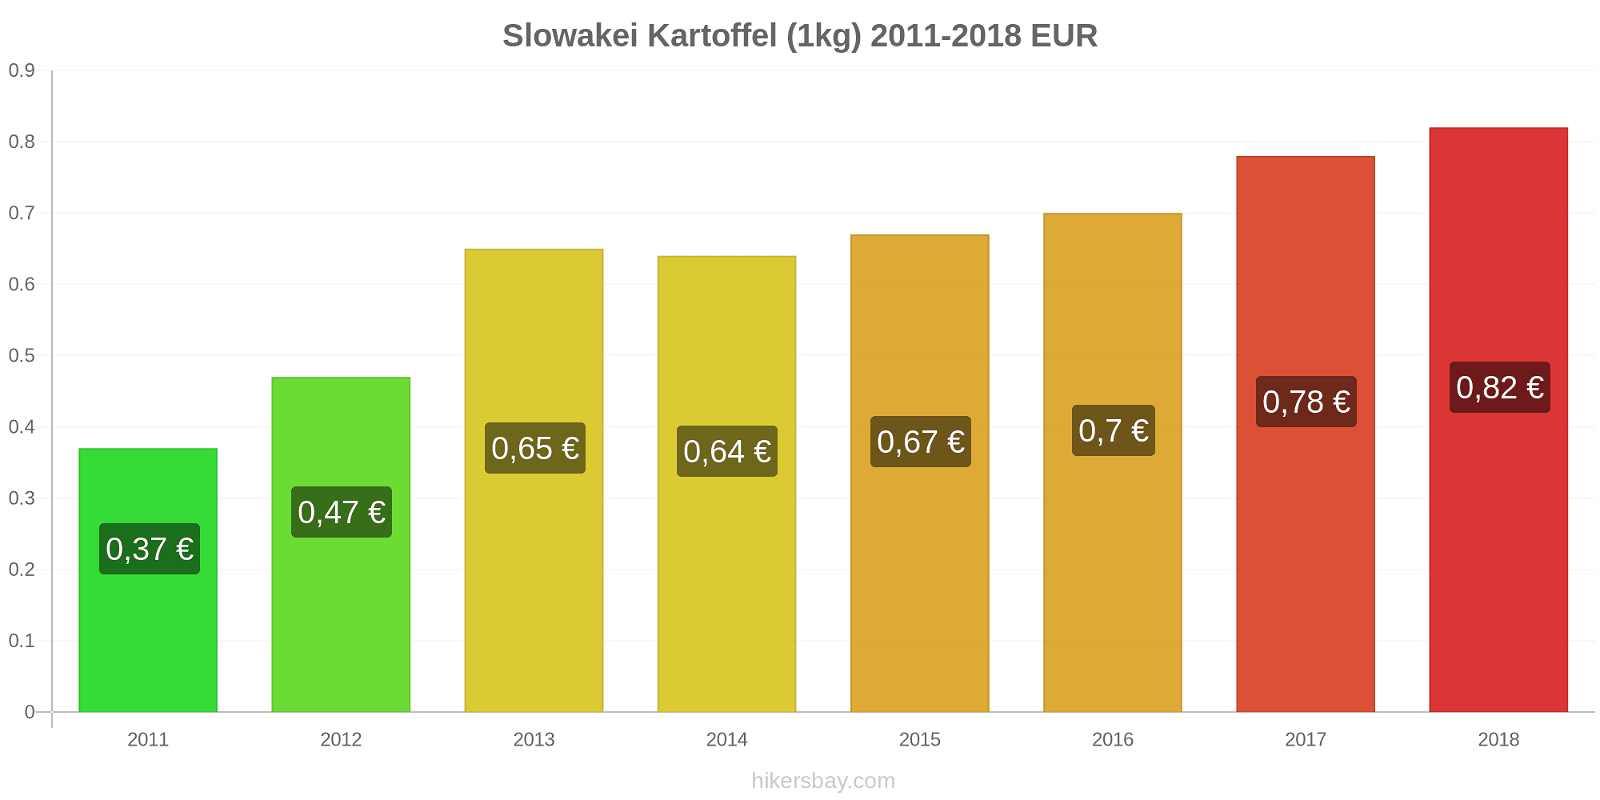 Slowakei Preisänderungen Kartoffeln (1kg) hikersbay.com